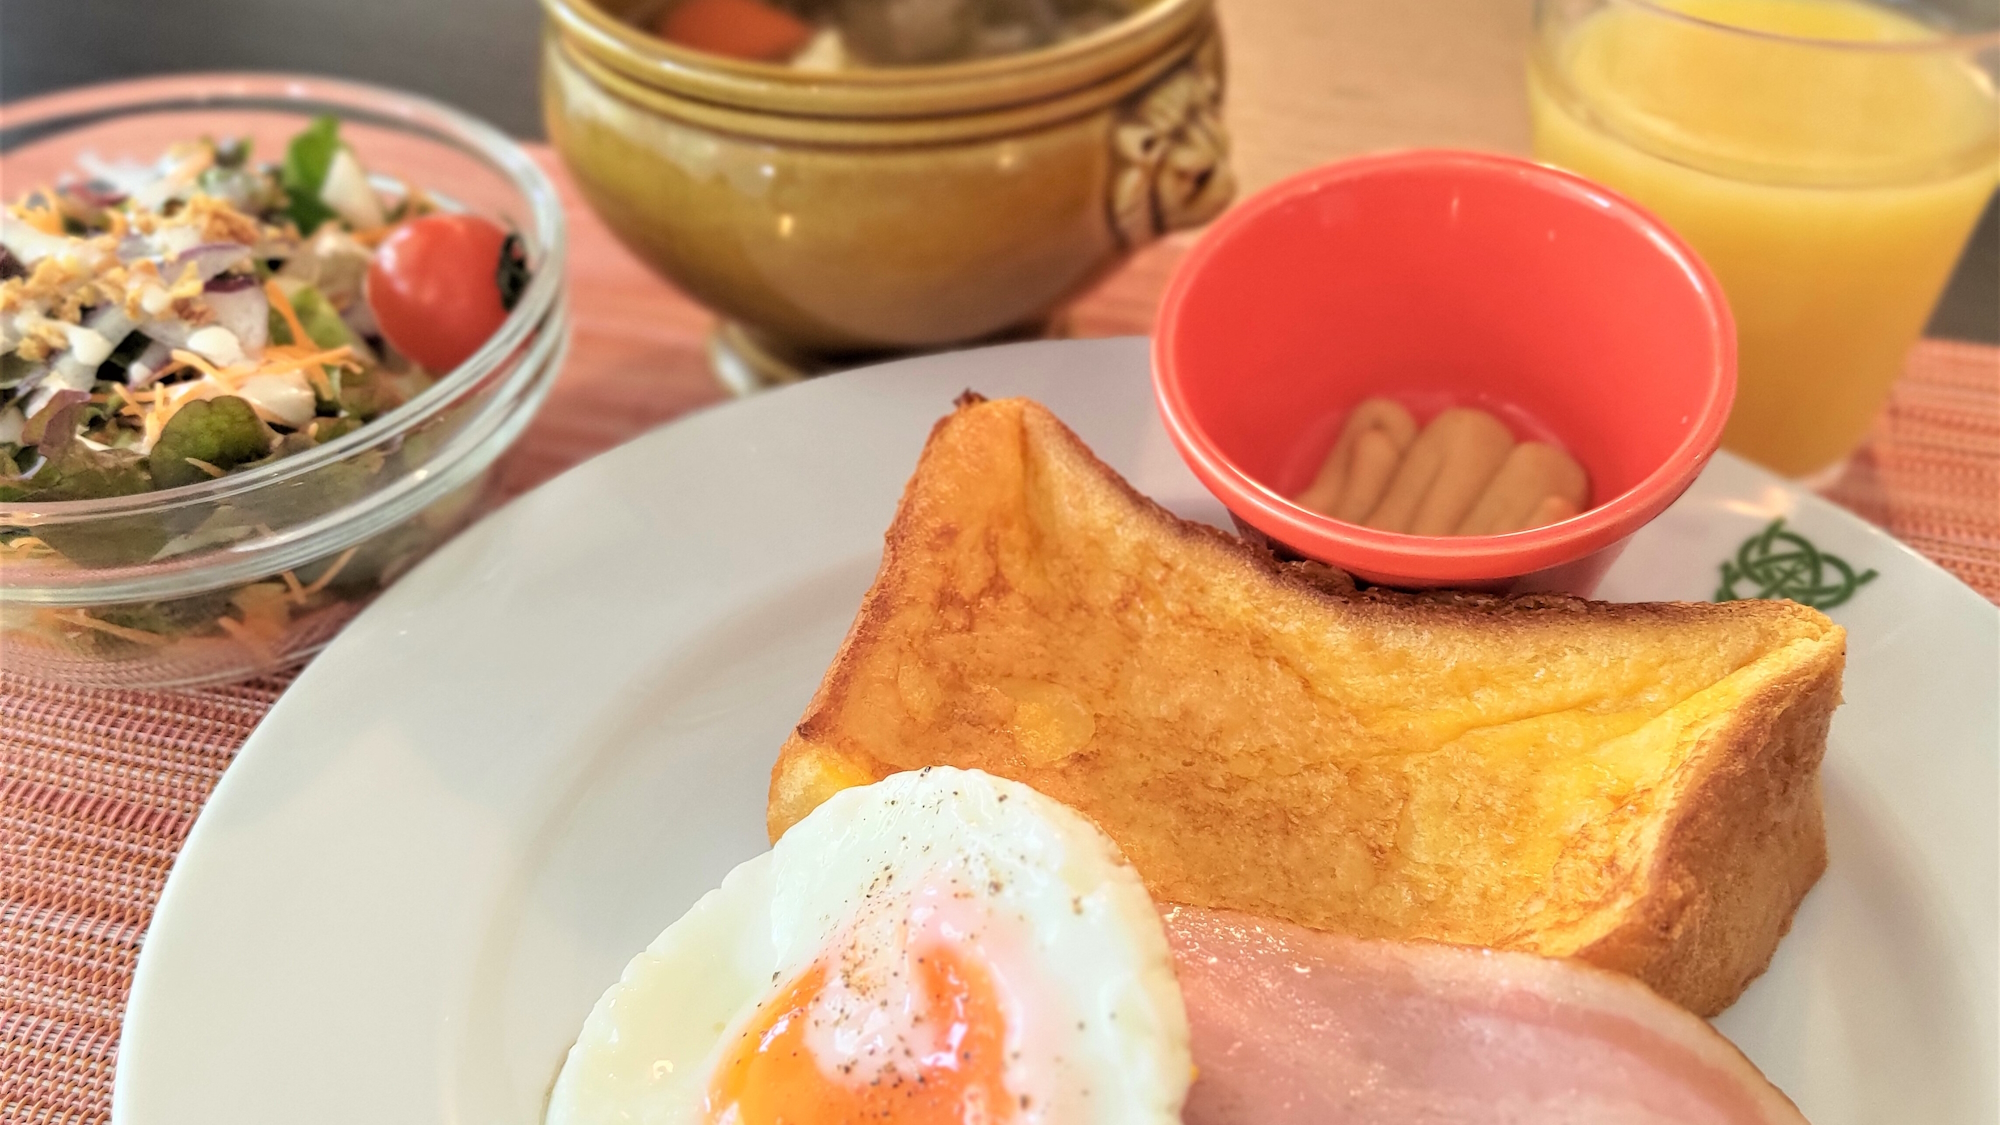 【朝食】地産地消のこだわりの朝ごはんはフレンチトーストをメインに※一例